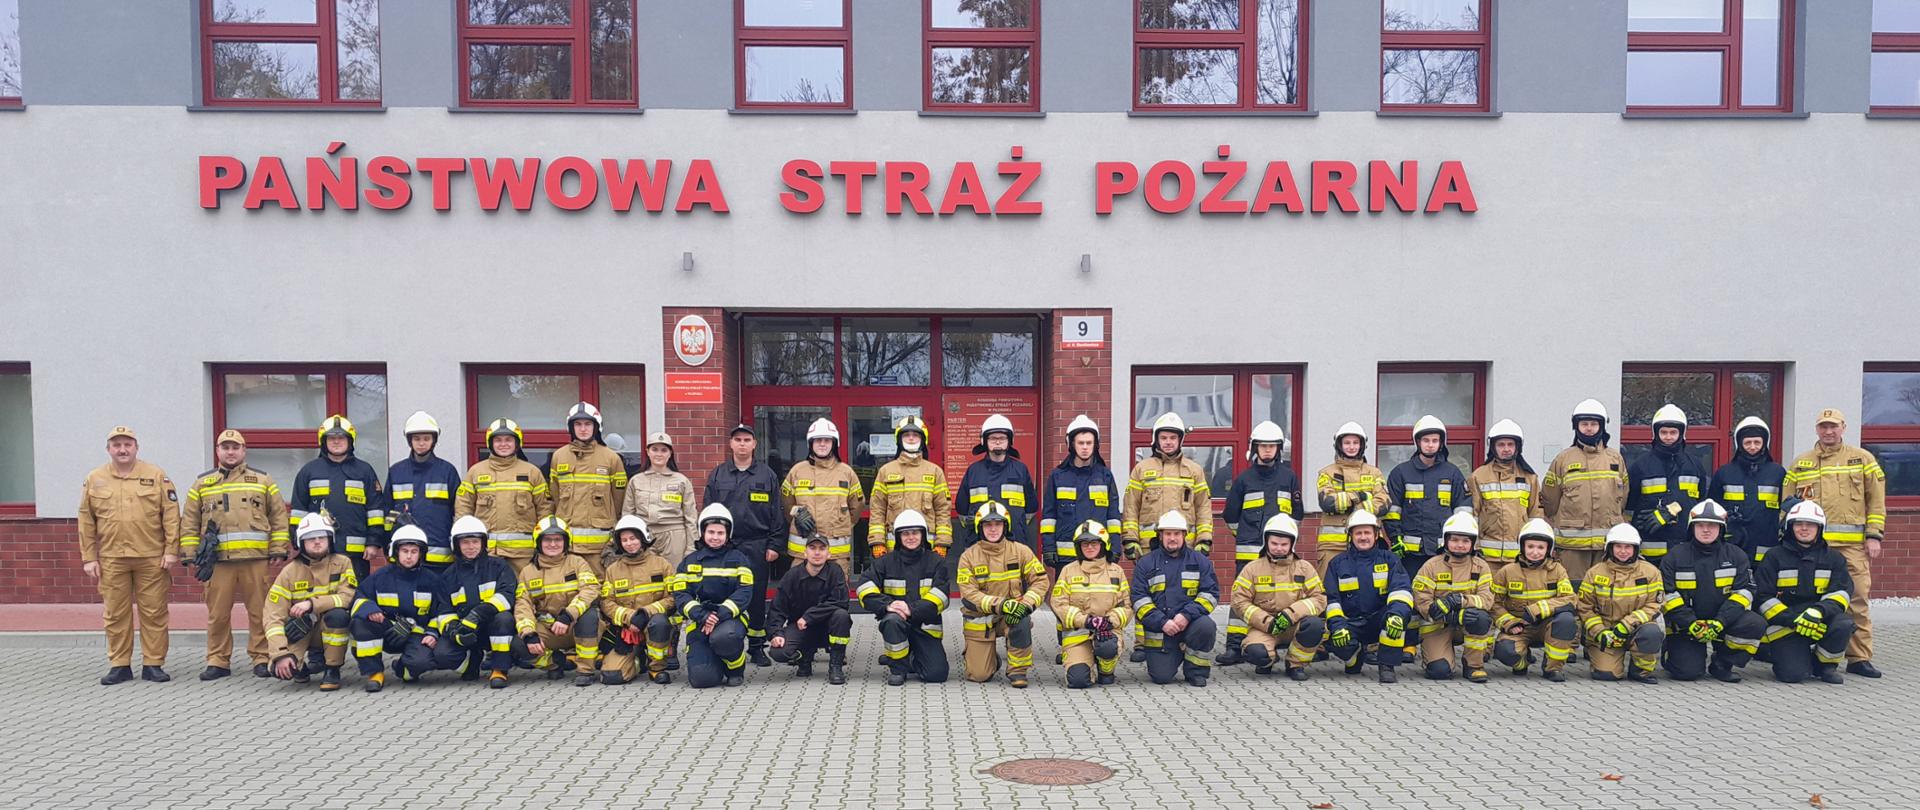 Grupa strażaków w dwuszeregu - pierwszy szereg kuca, drugi szereg stoi. z tyłu budynek z napisem Państwowa Straż Pożarna.